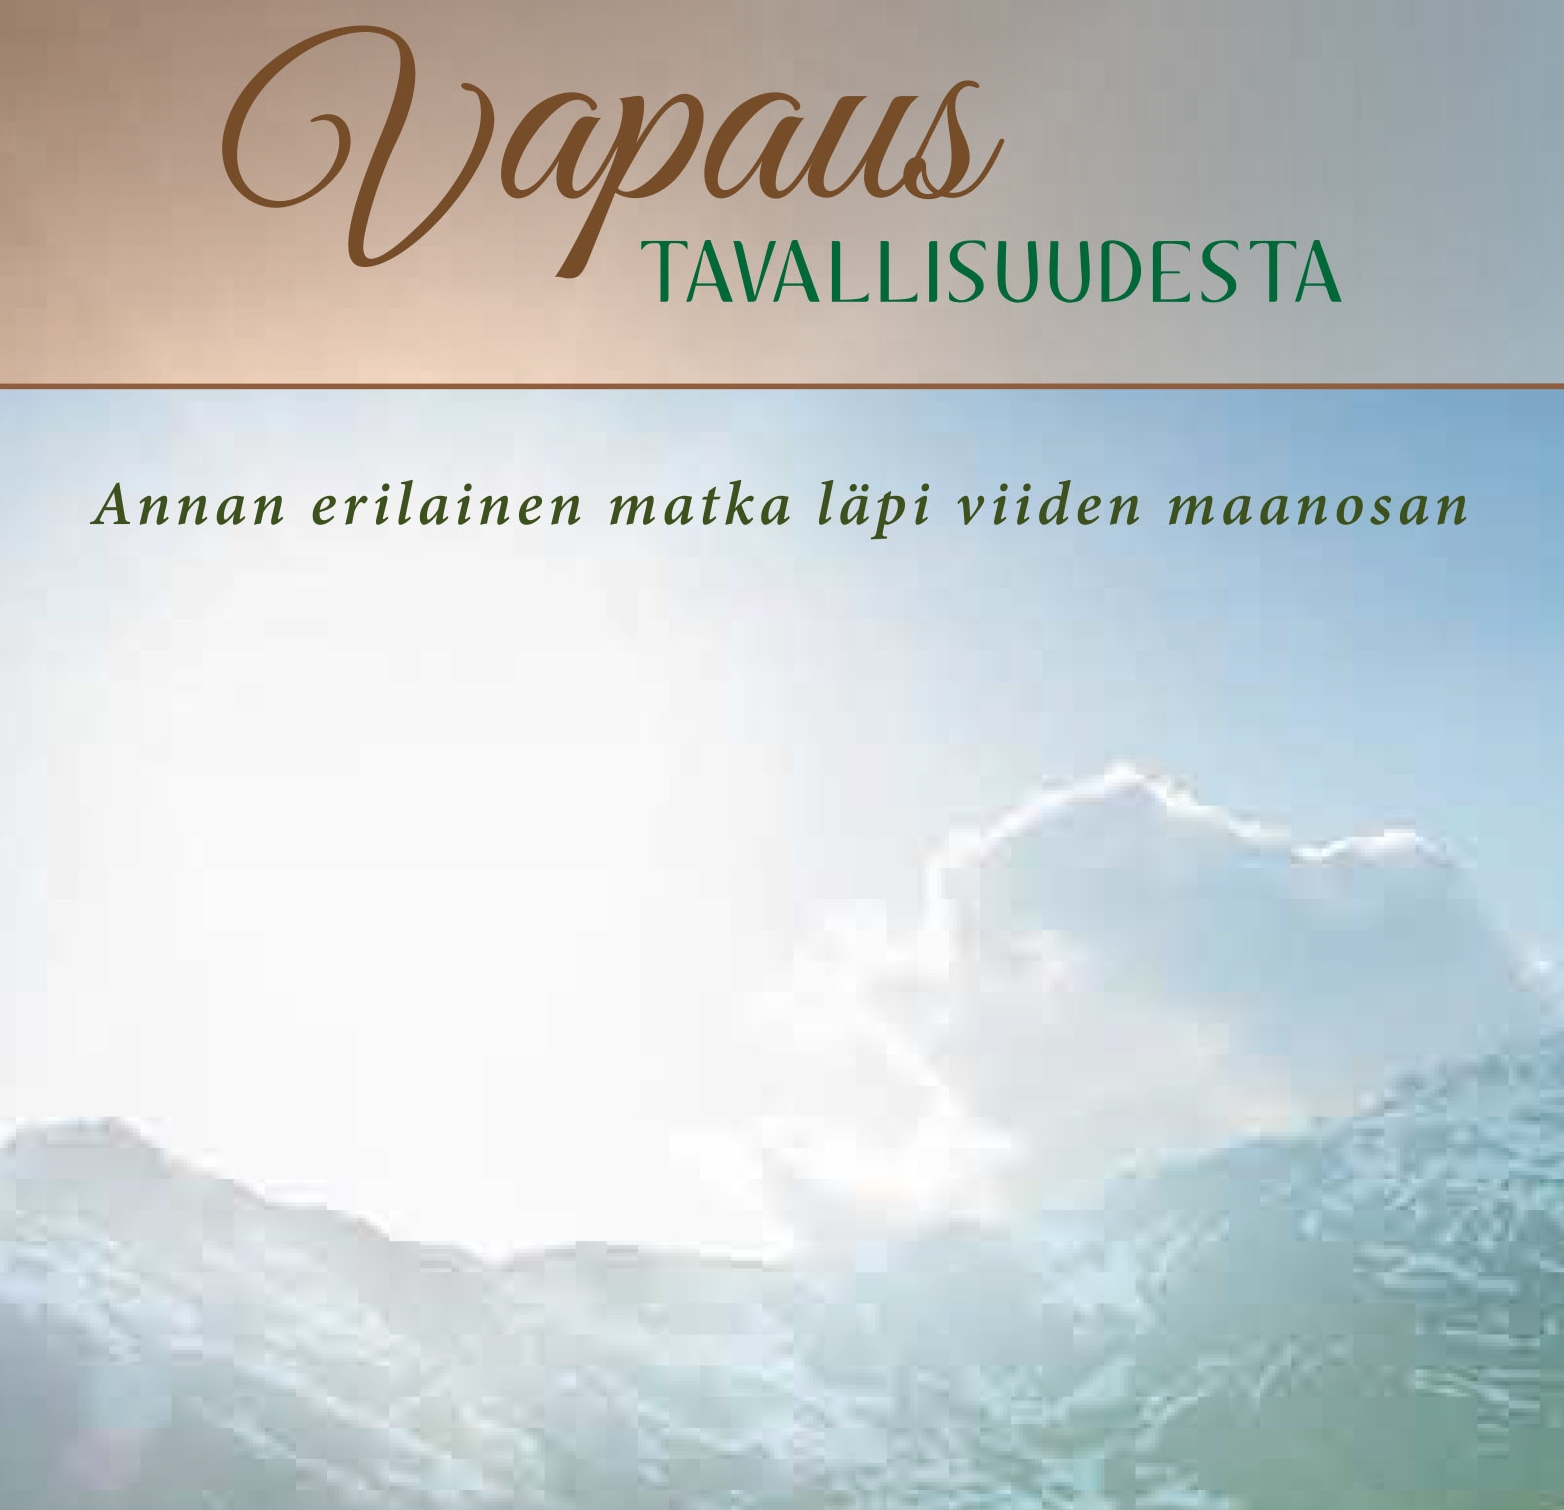 Vapaus Tavallisudesta available in Finnish